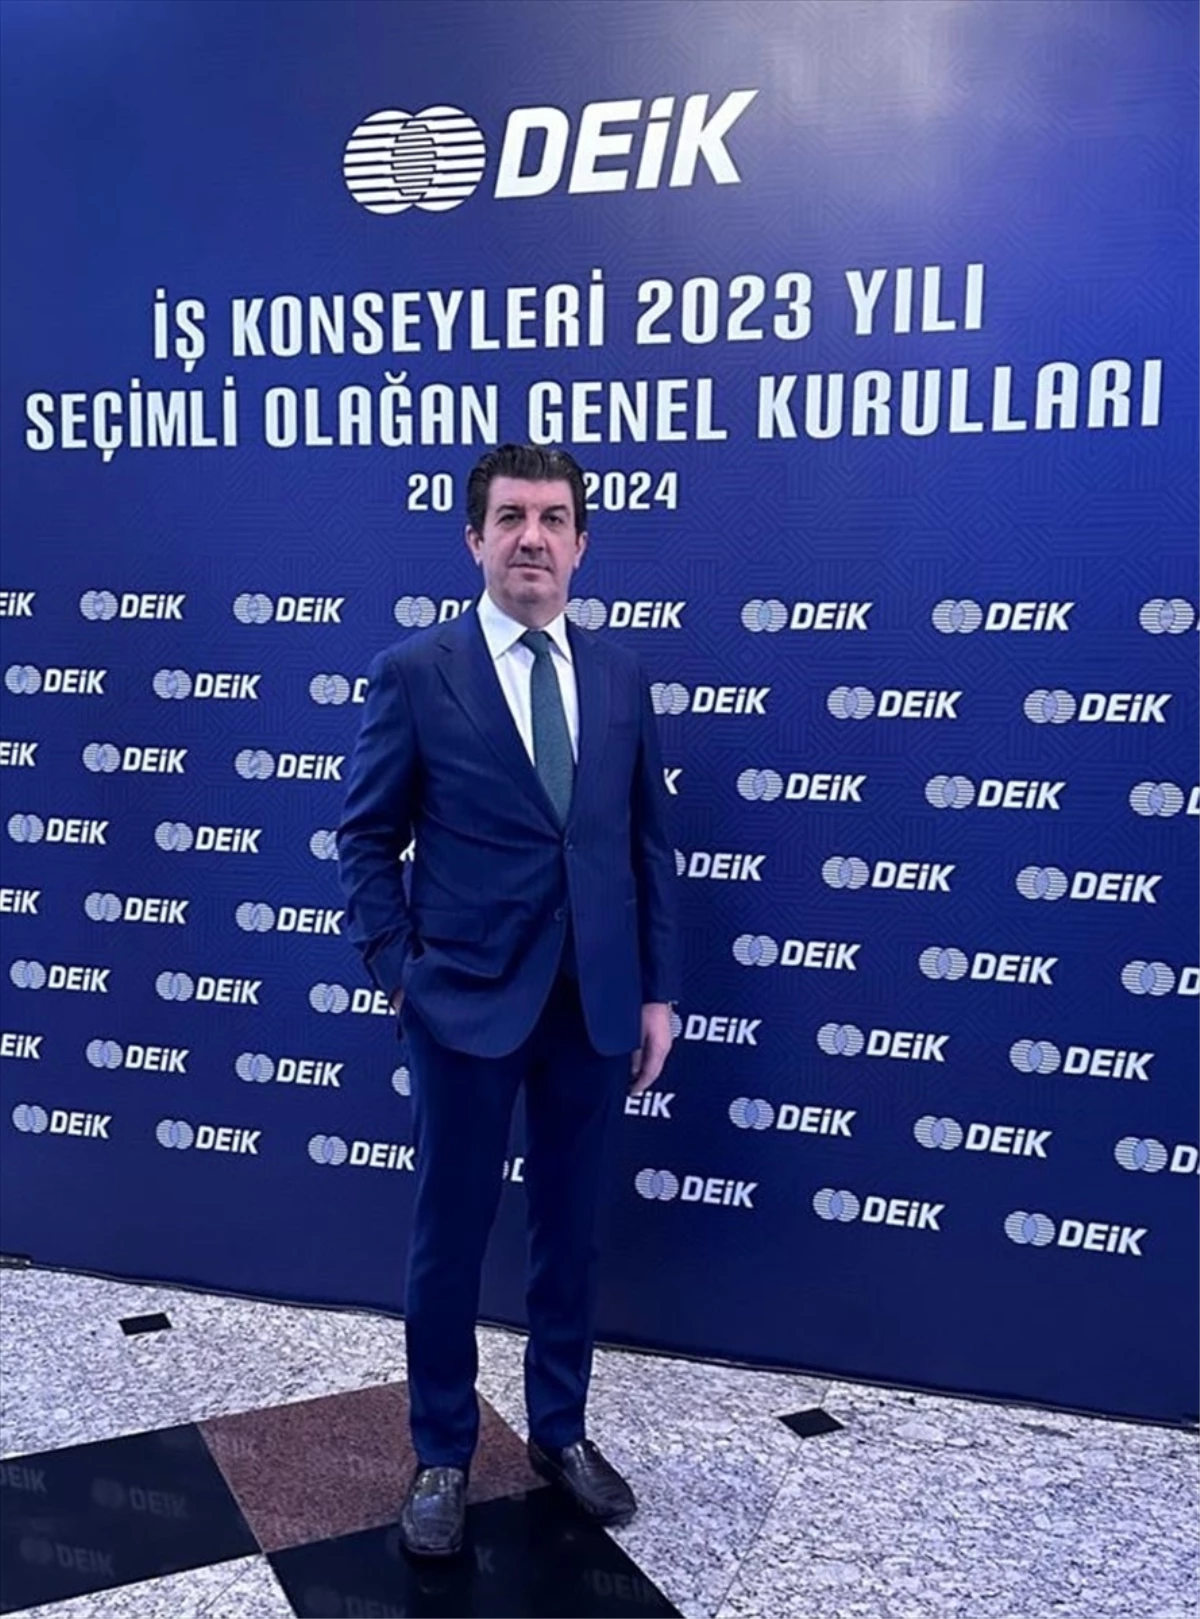 Karanfil Group Yönetim Kurulu Başkanı Murtaza Karanfil, DEİK Türkiye-Libya İş Konseyi Başkanı seçildi